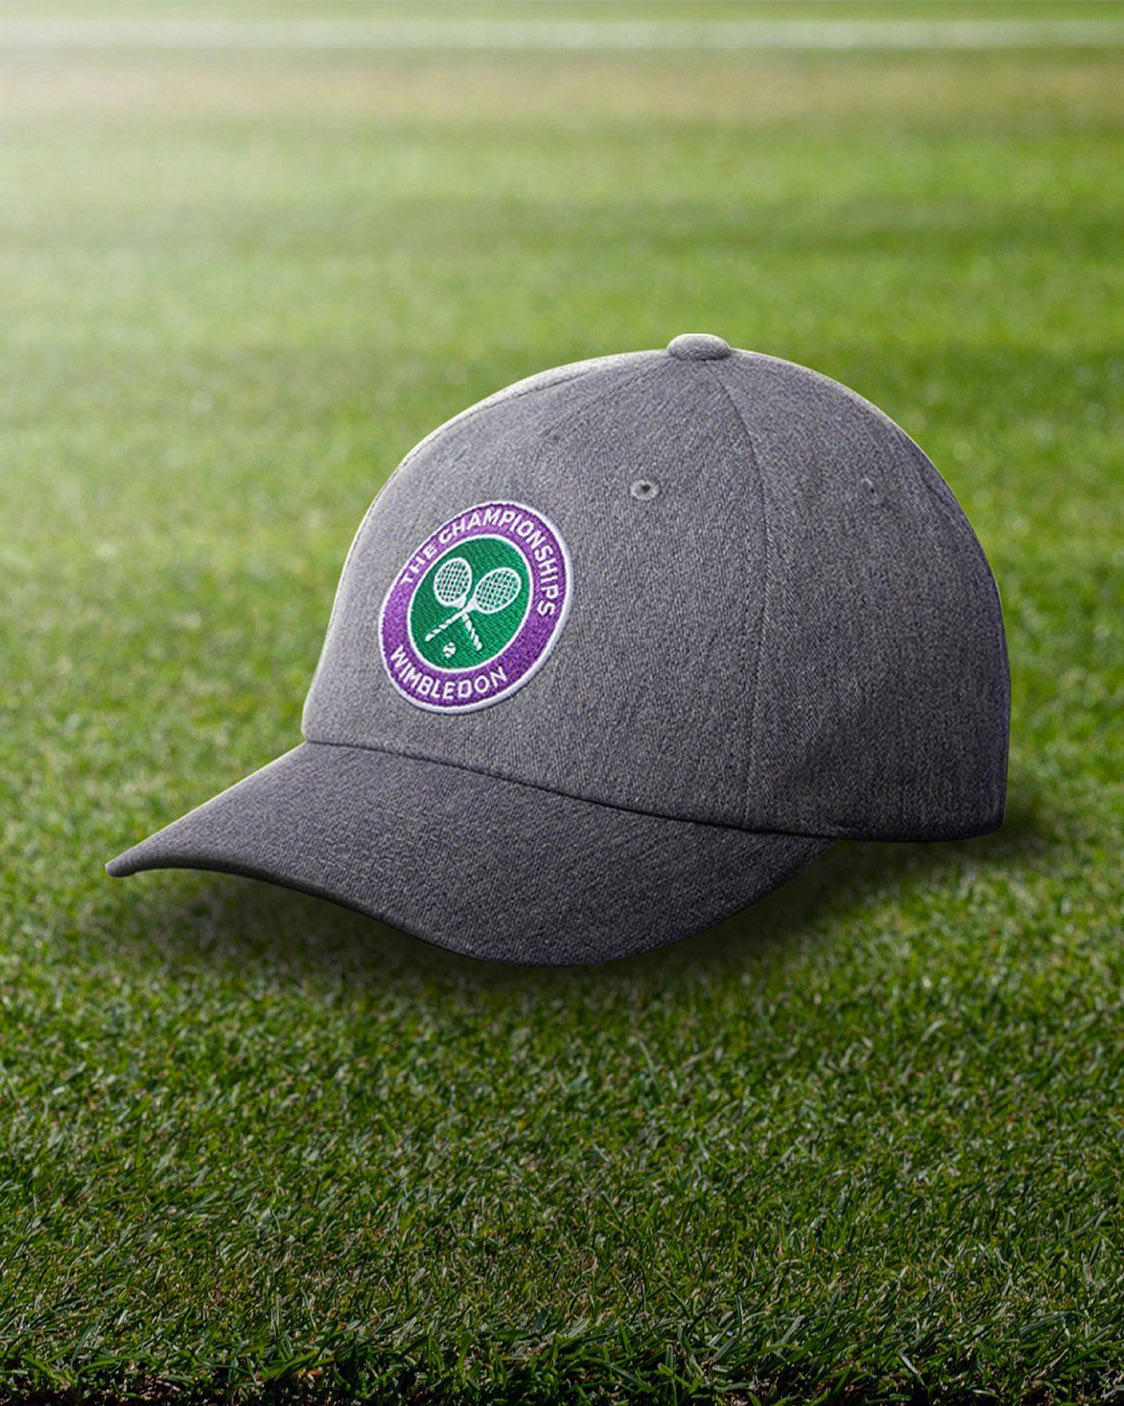 Spring has finally sprung - a good time to explore our #Wimbledon cap collection